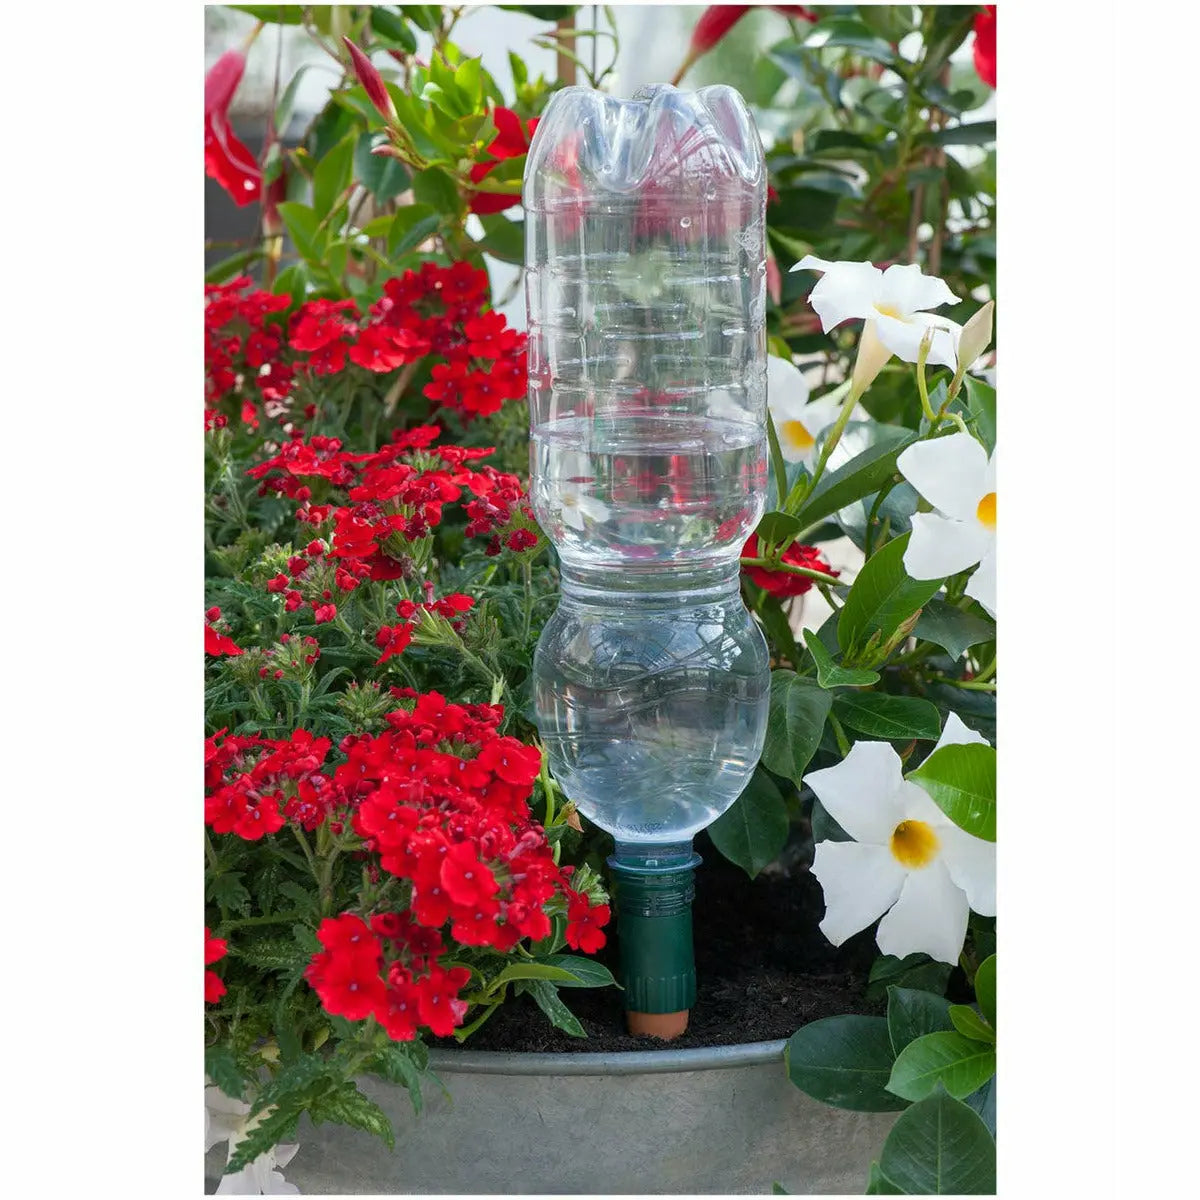 Blumat Easy Bottle Adapter Plant Watering Stake, Single Unit Blumat